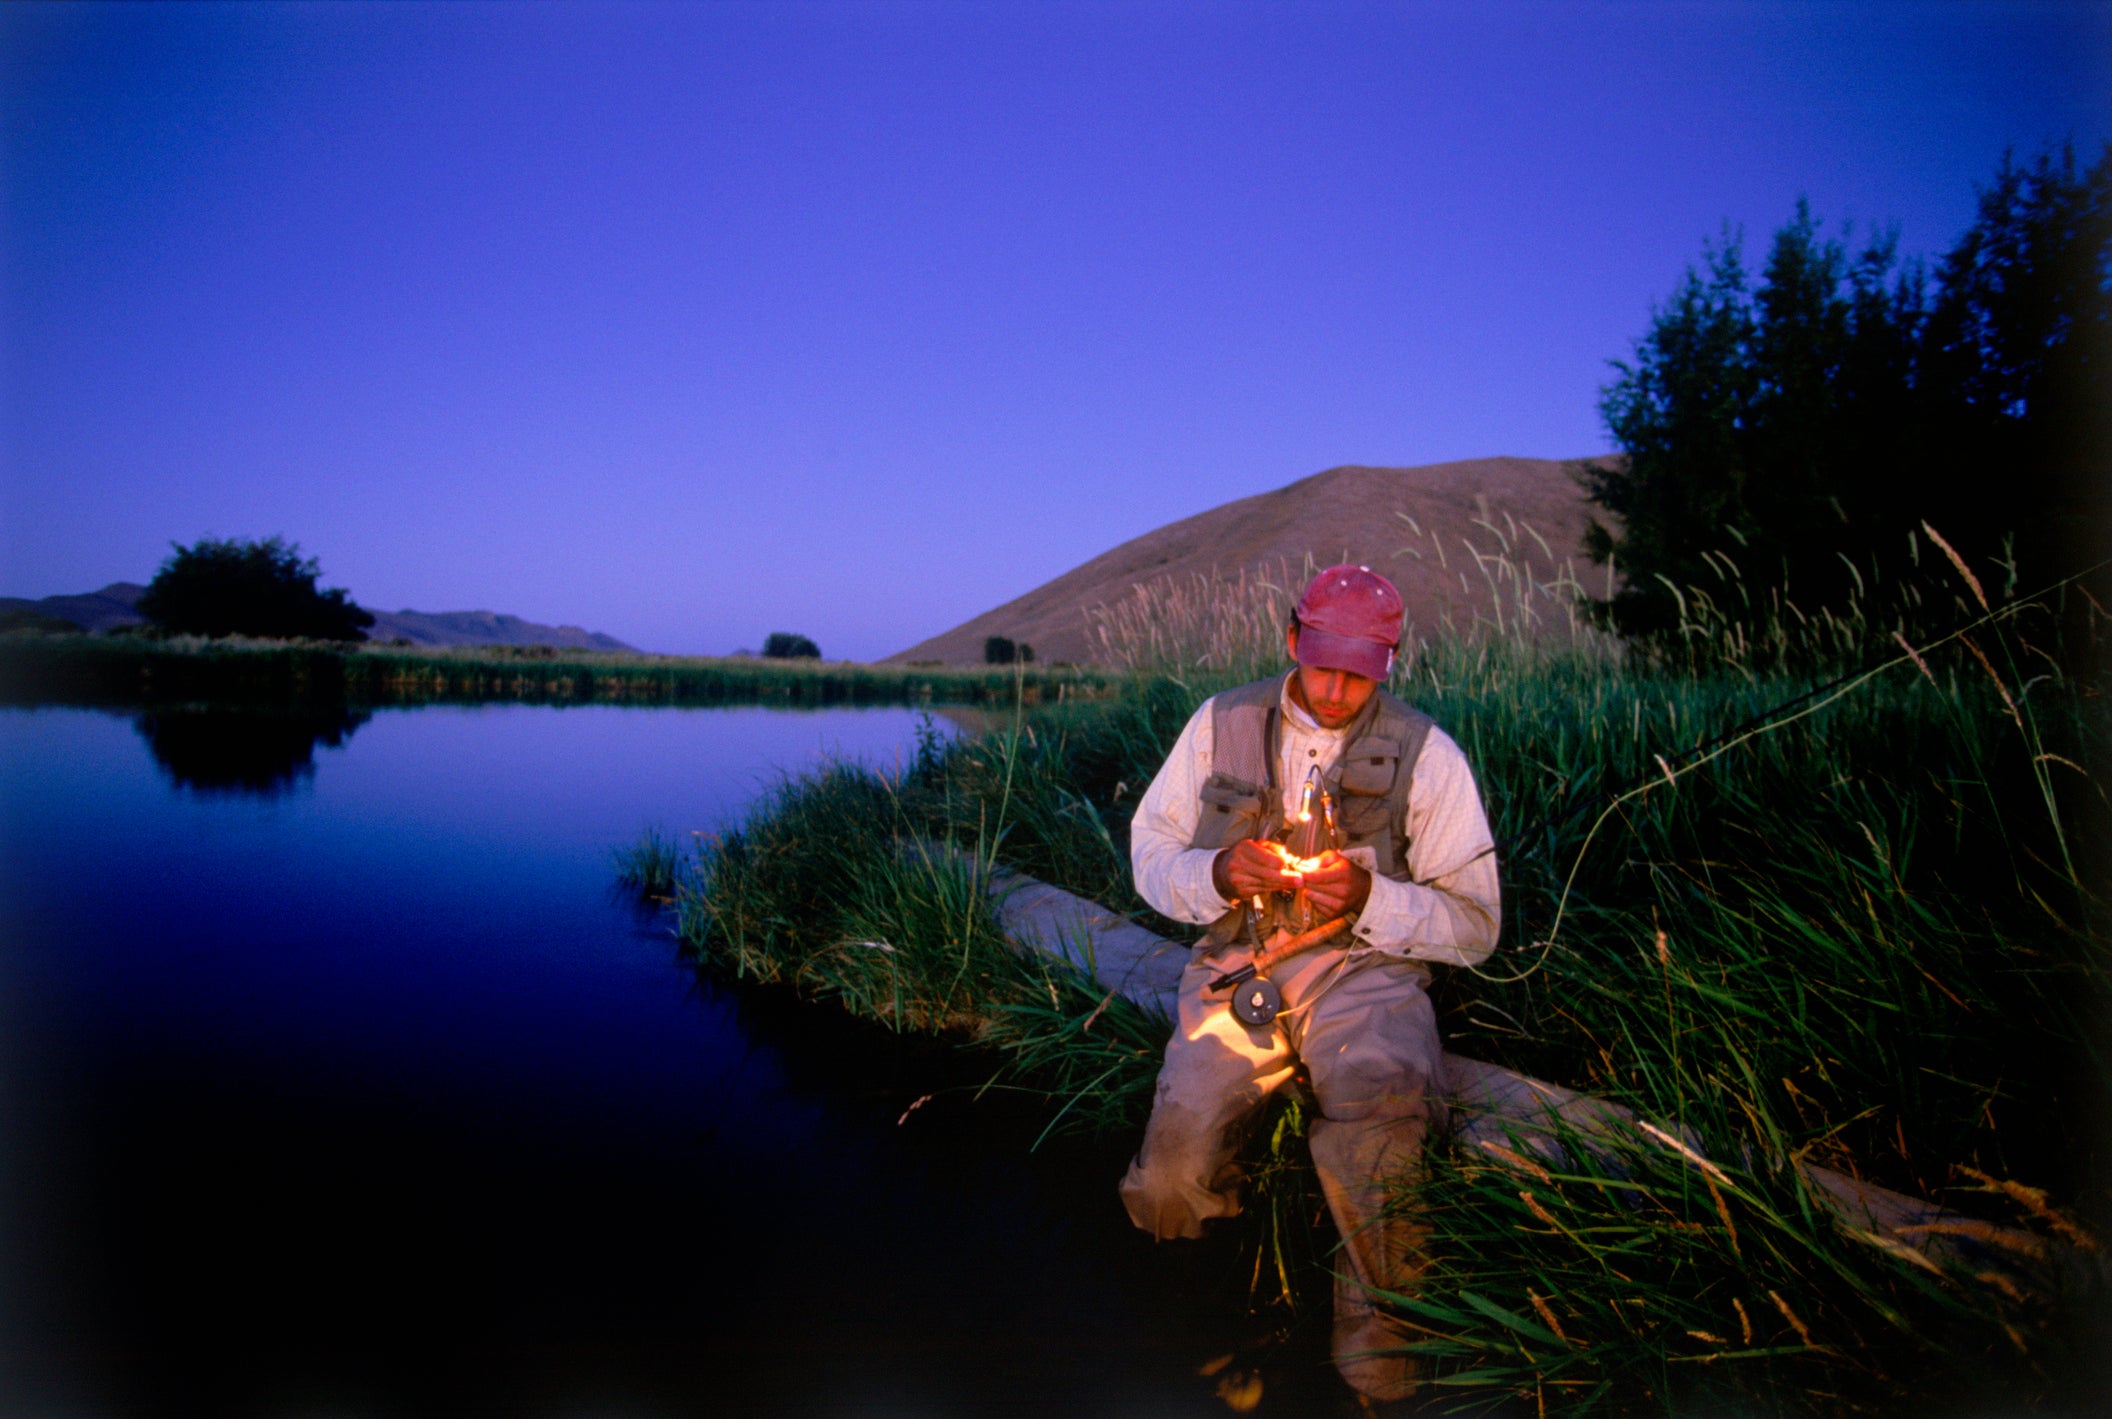 Man trout fishing at night, Idaho